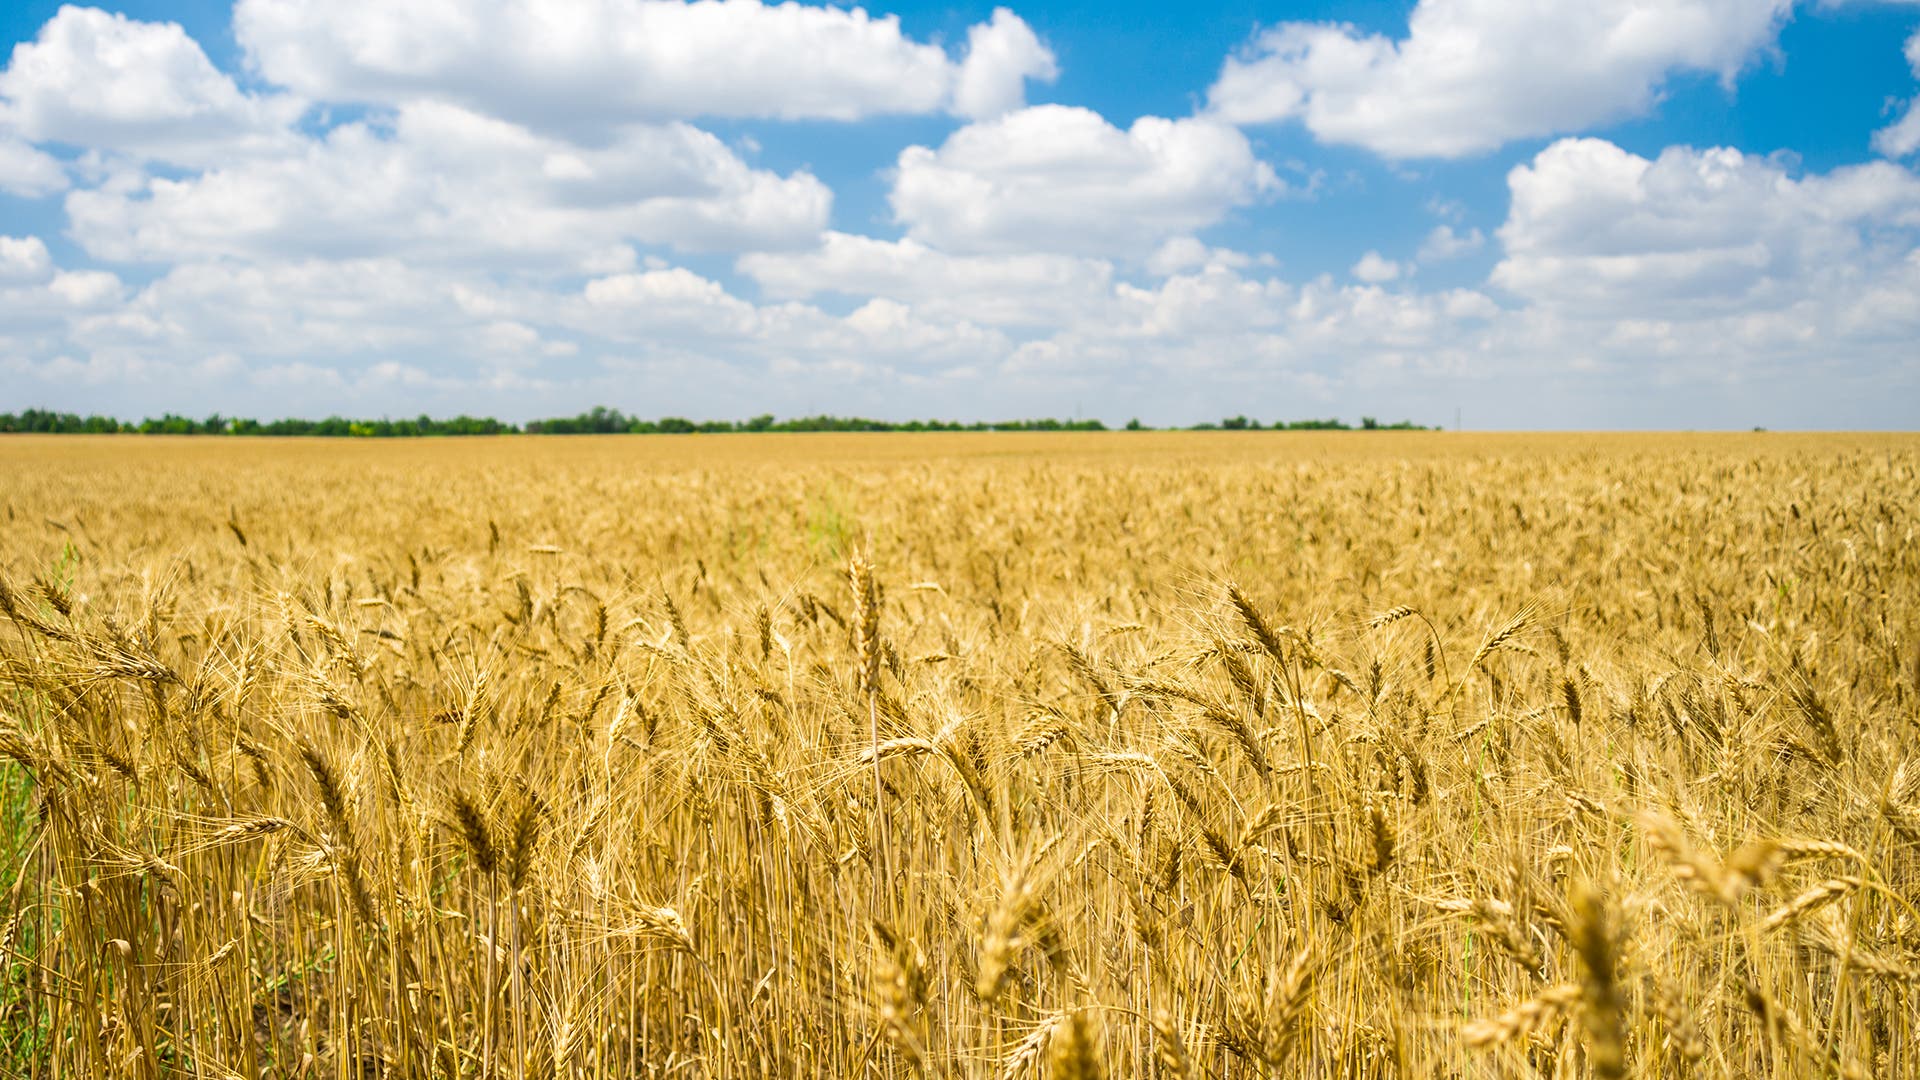 A wheat field in Mykolayiv, Ukraine.